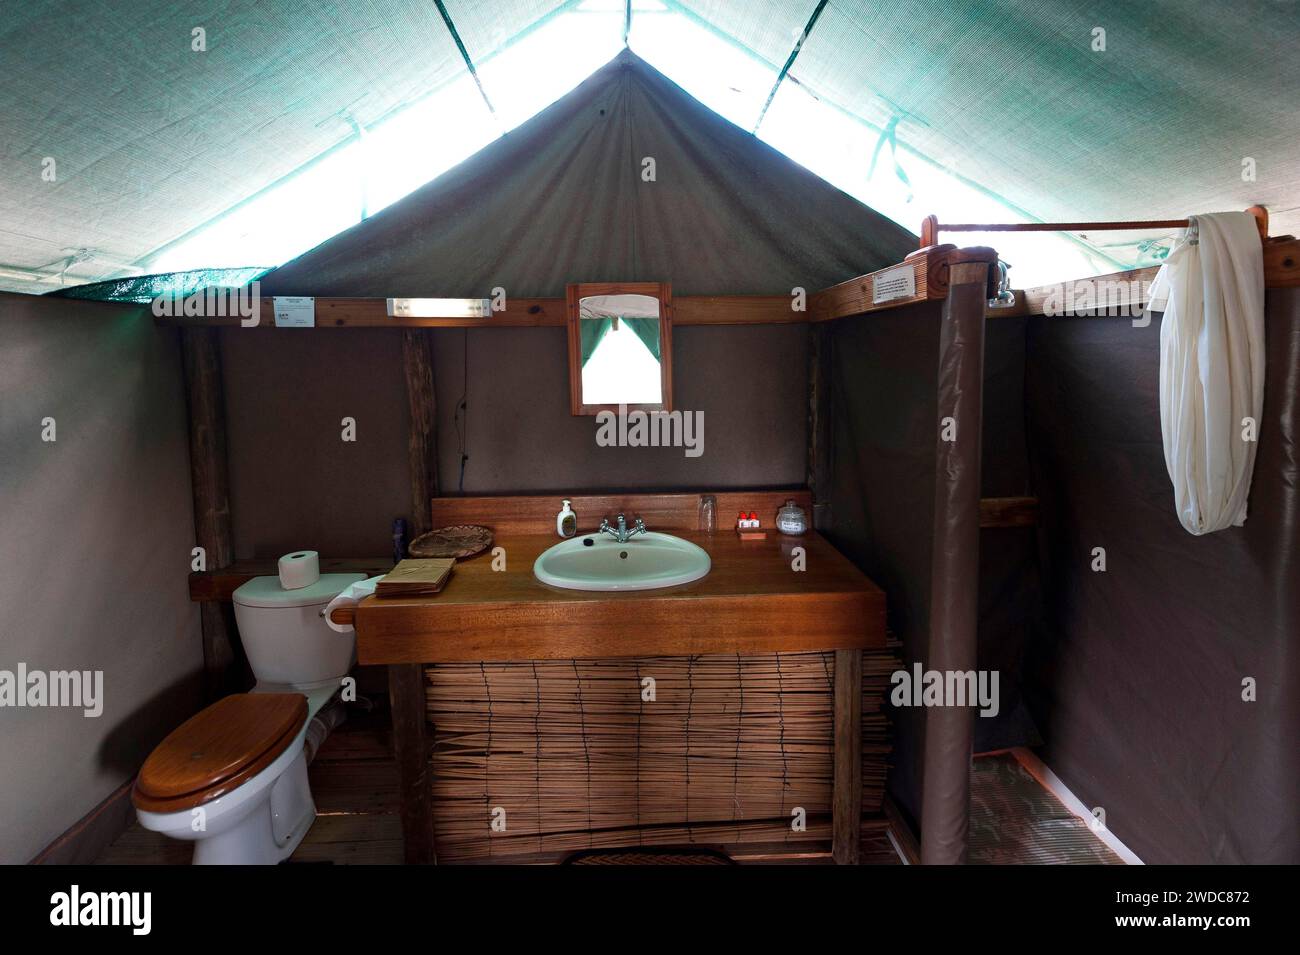 Tenda Lodge con bagno, vasca, WC, lavaggio, igiene, pernottamento, campeggio, glamping, alloggio, viaggio, turismo, vacanza, safari, tour Foto Stock